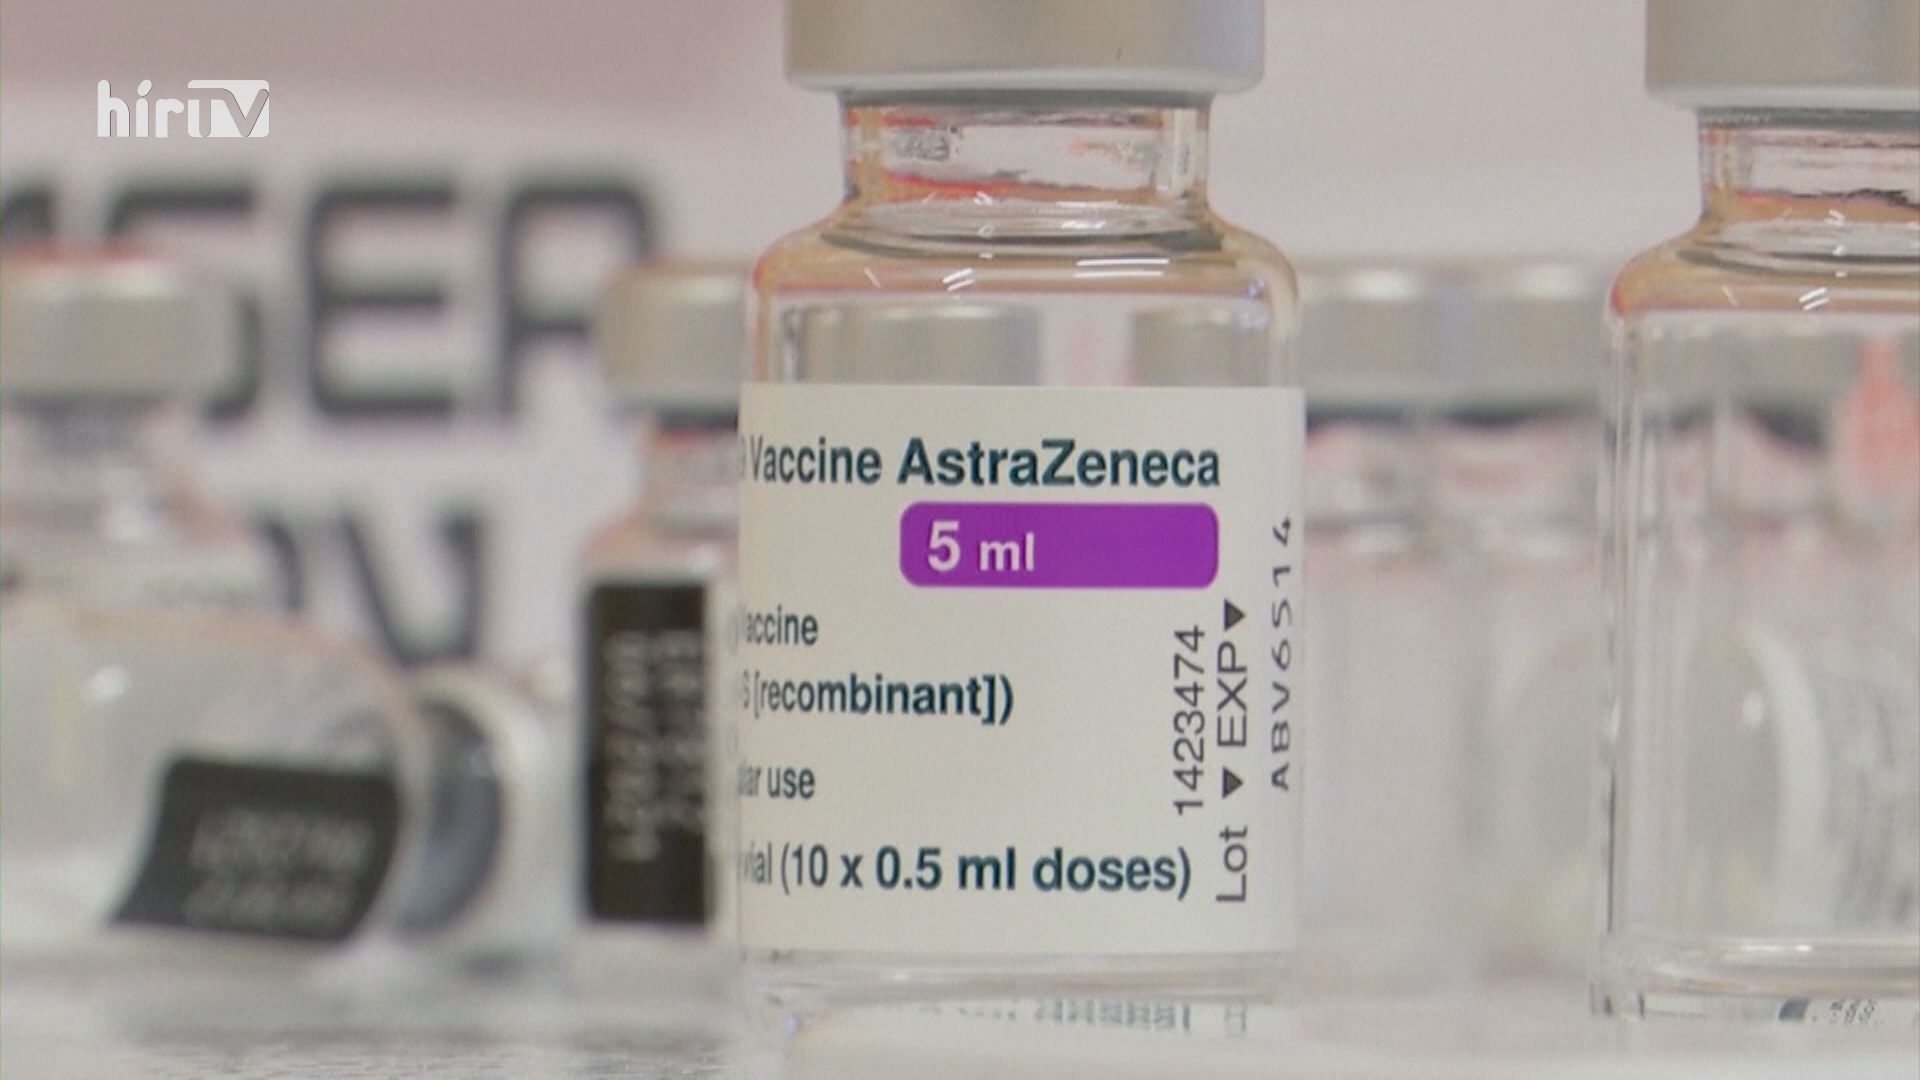 Továbbra is ajánlja az AstraZeneca vakcina alkalmazását az európai hatóság